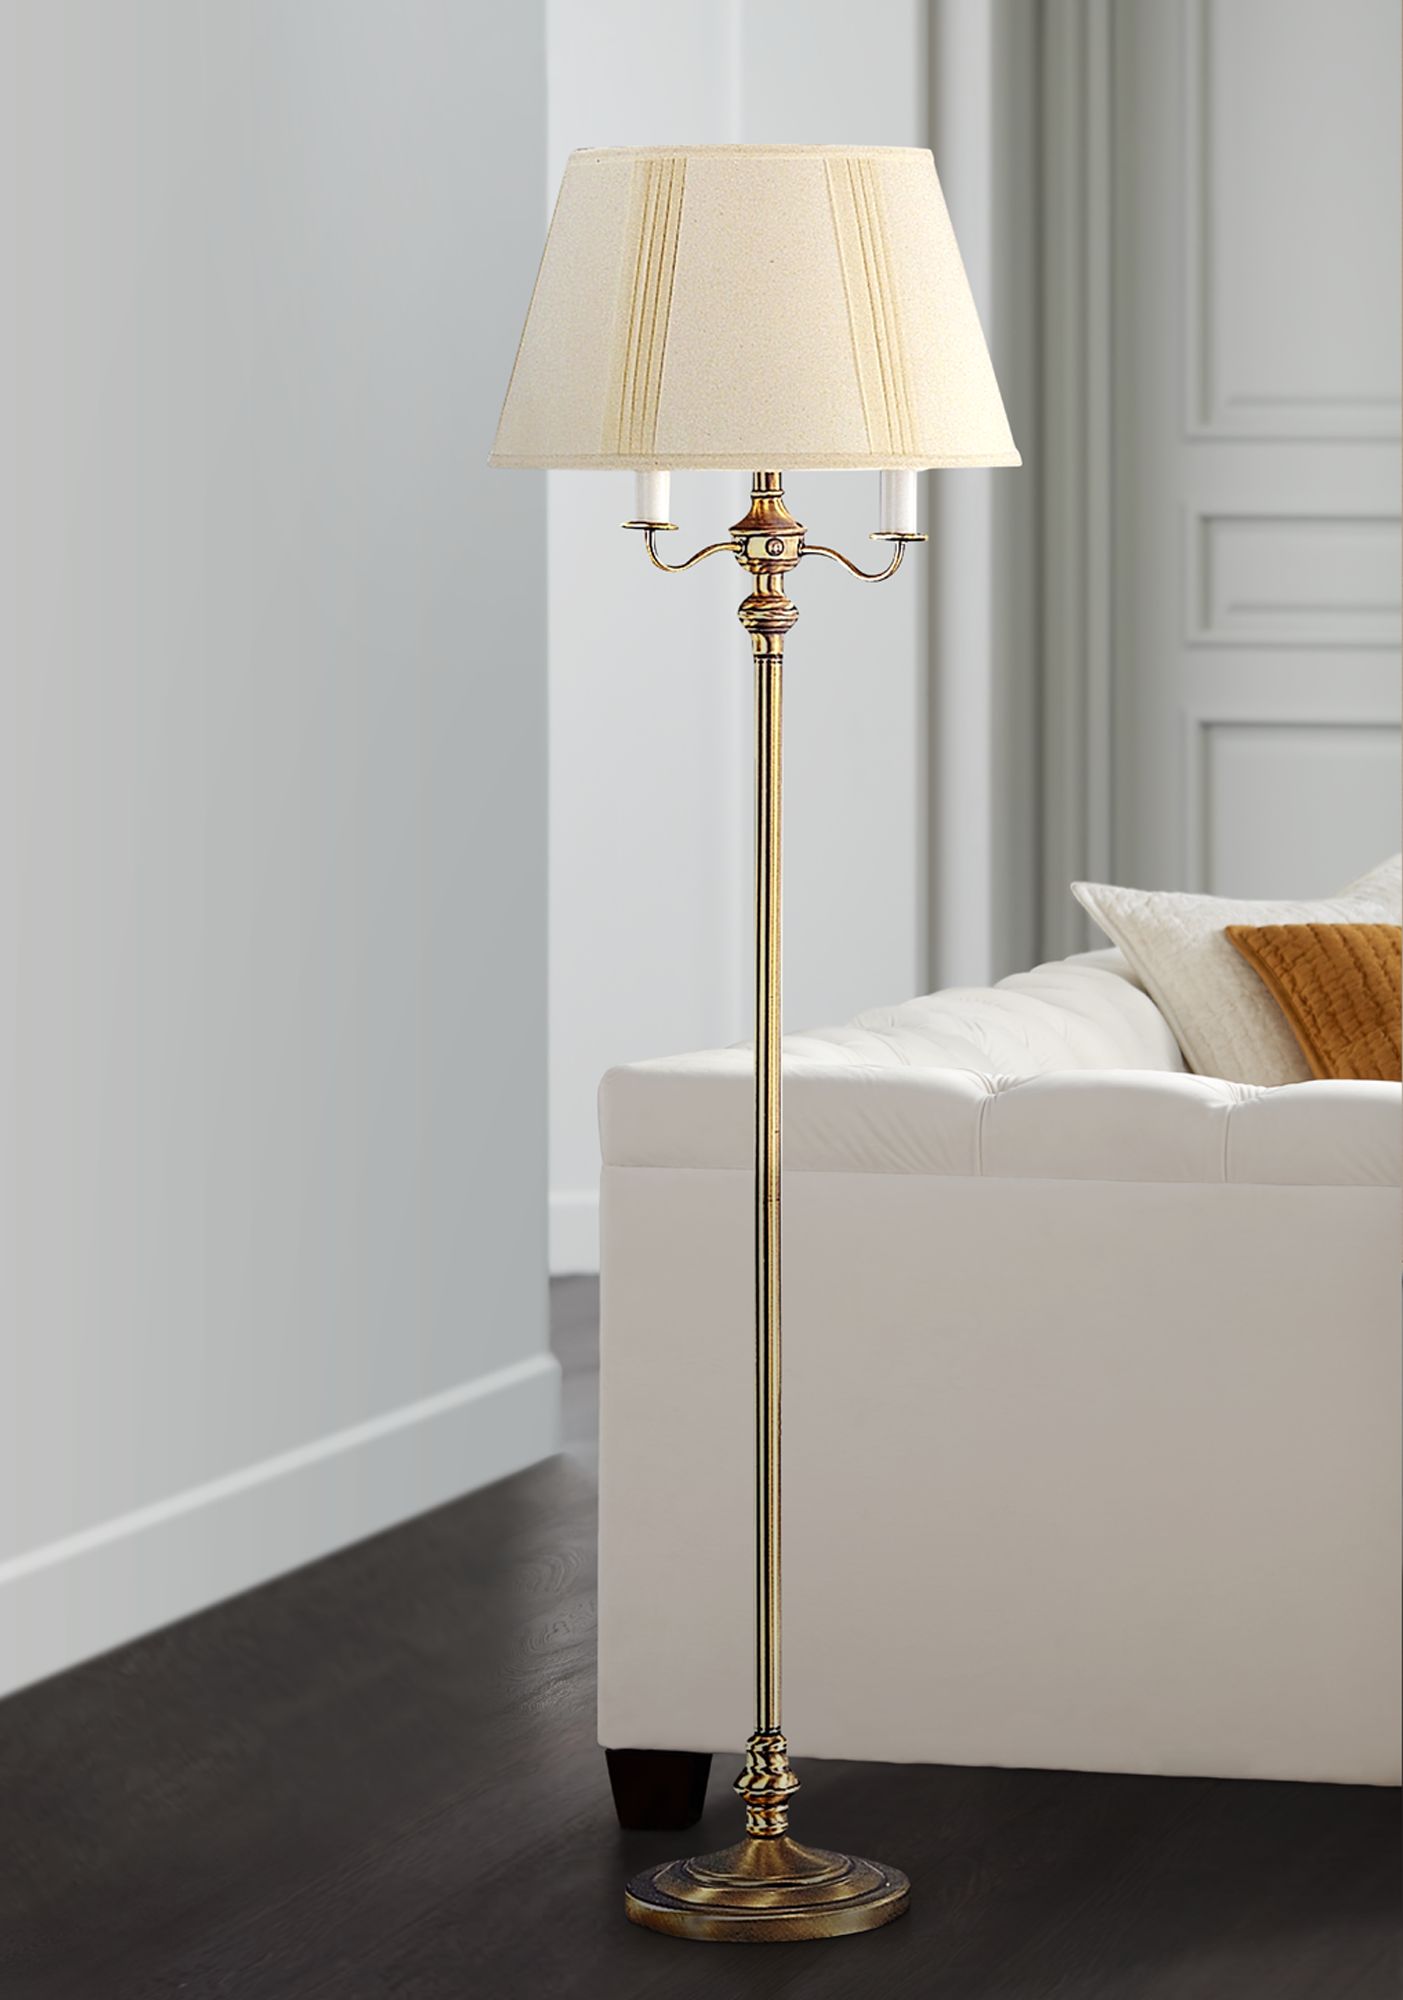 4 light floor lamp